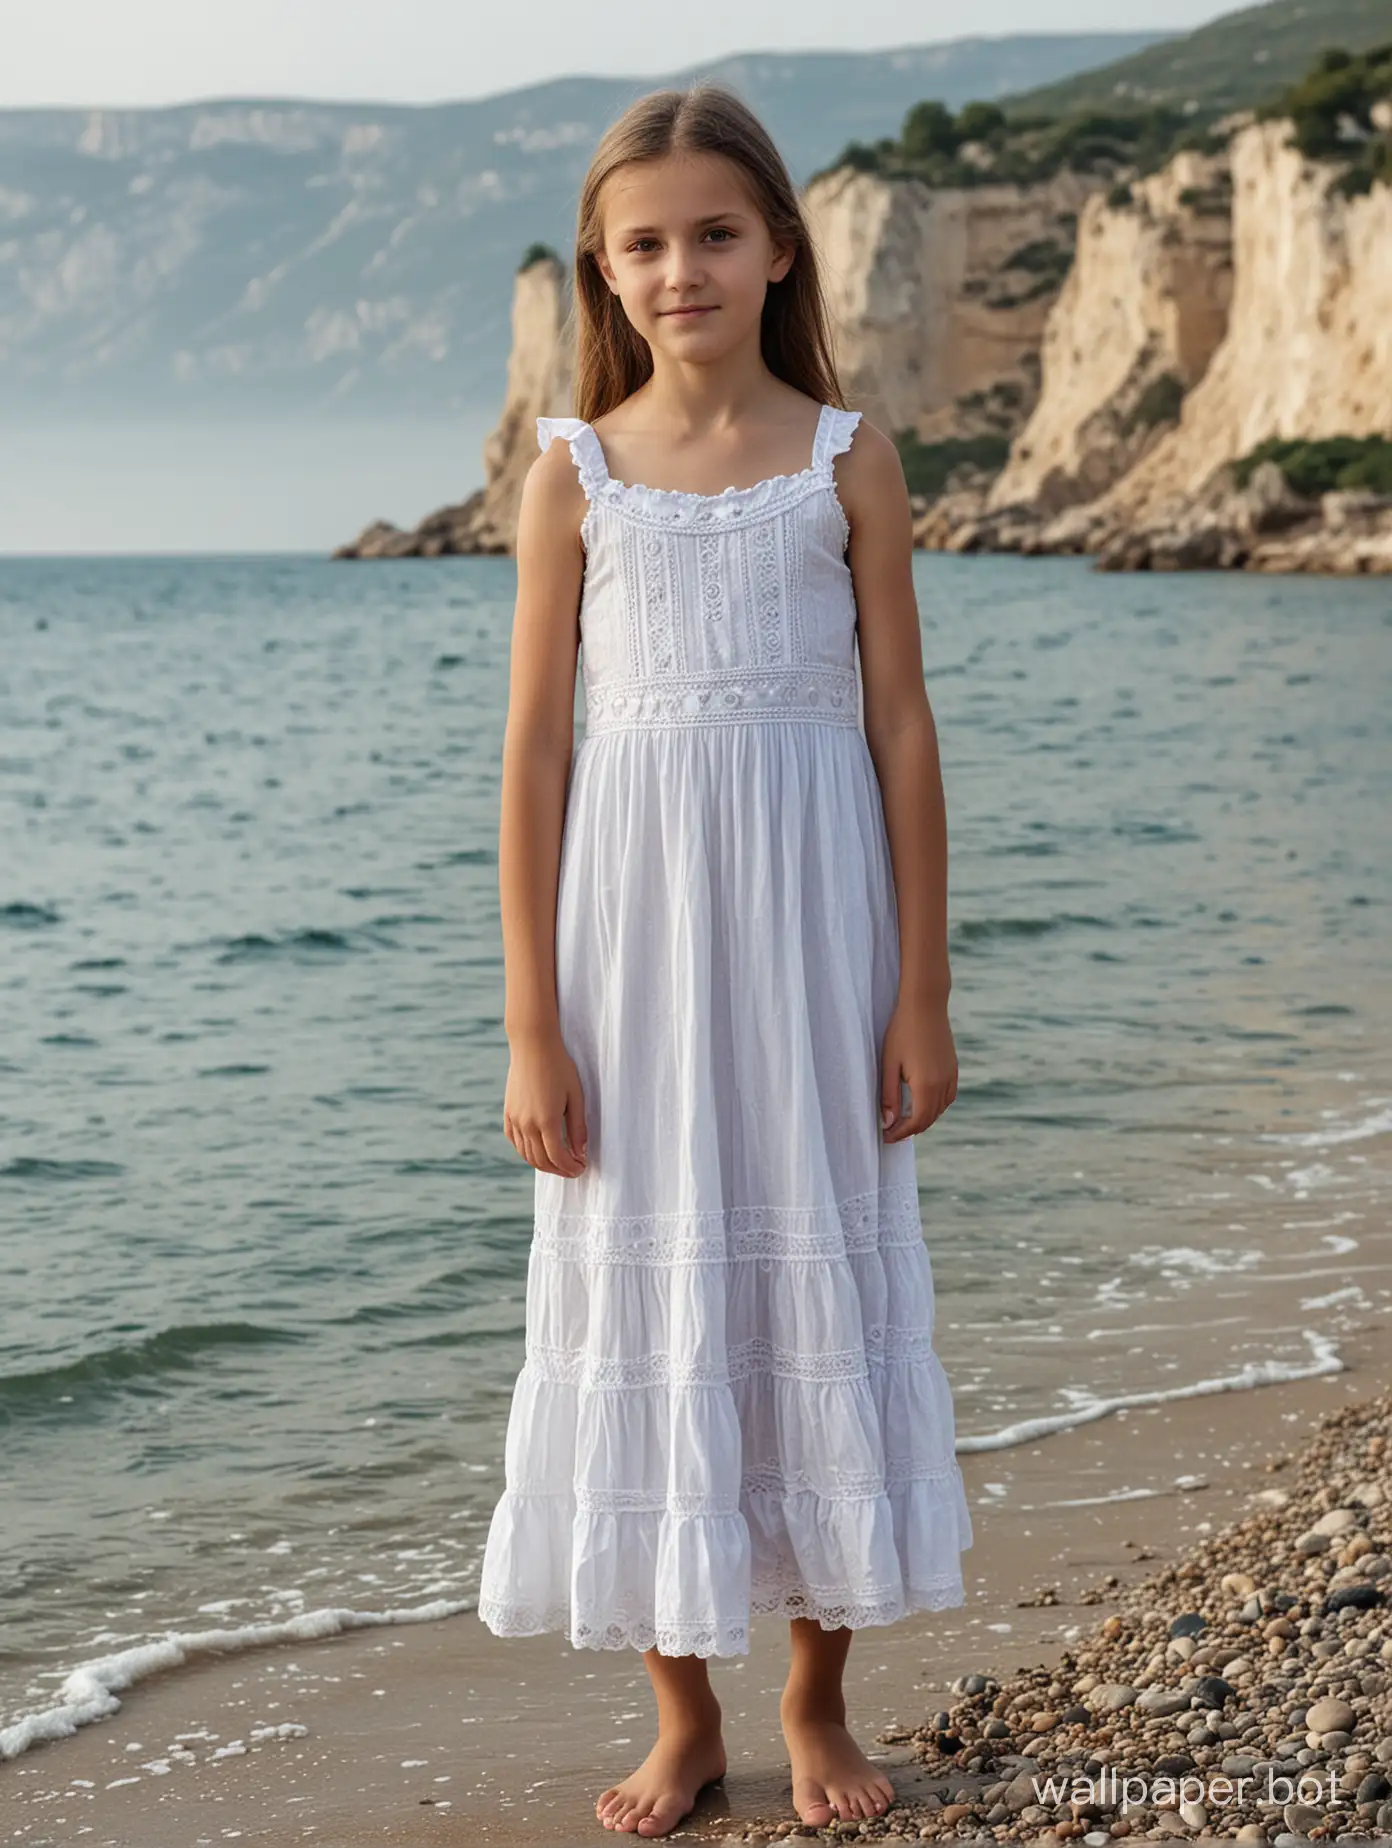 Крым, берег моря, девочка 10 лет в платье, позирует, в полный рост, платье на голое тело